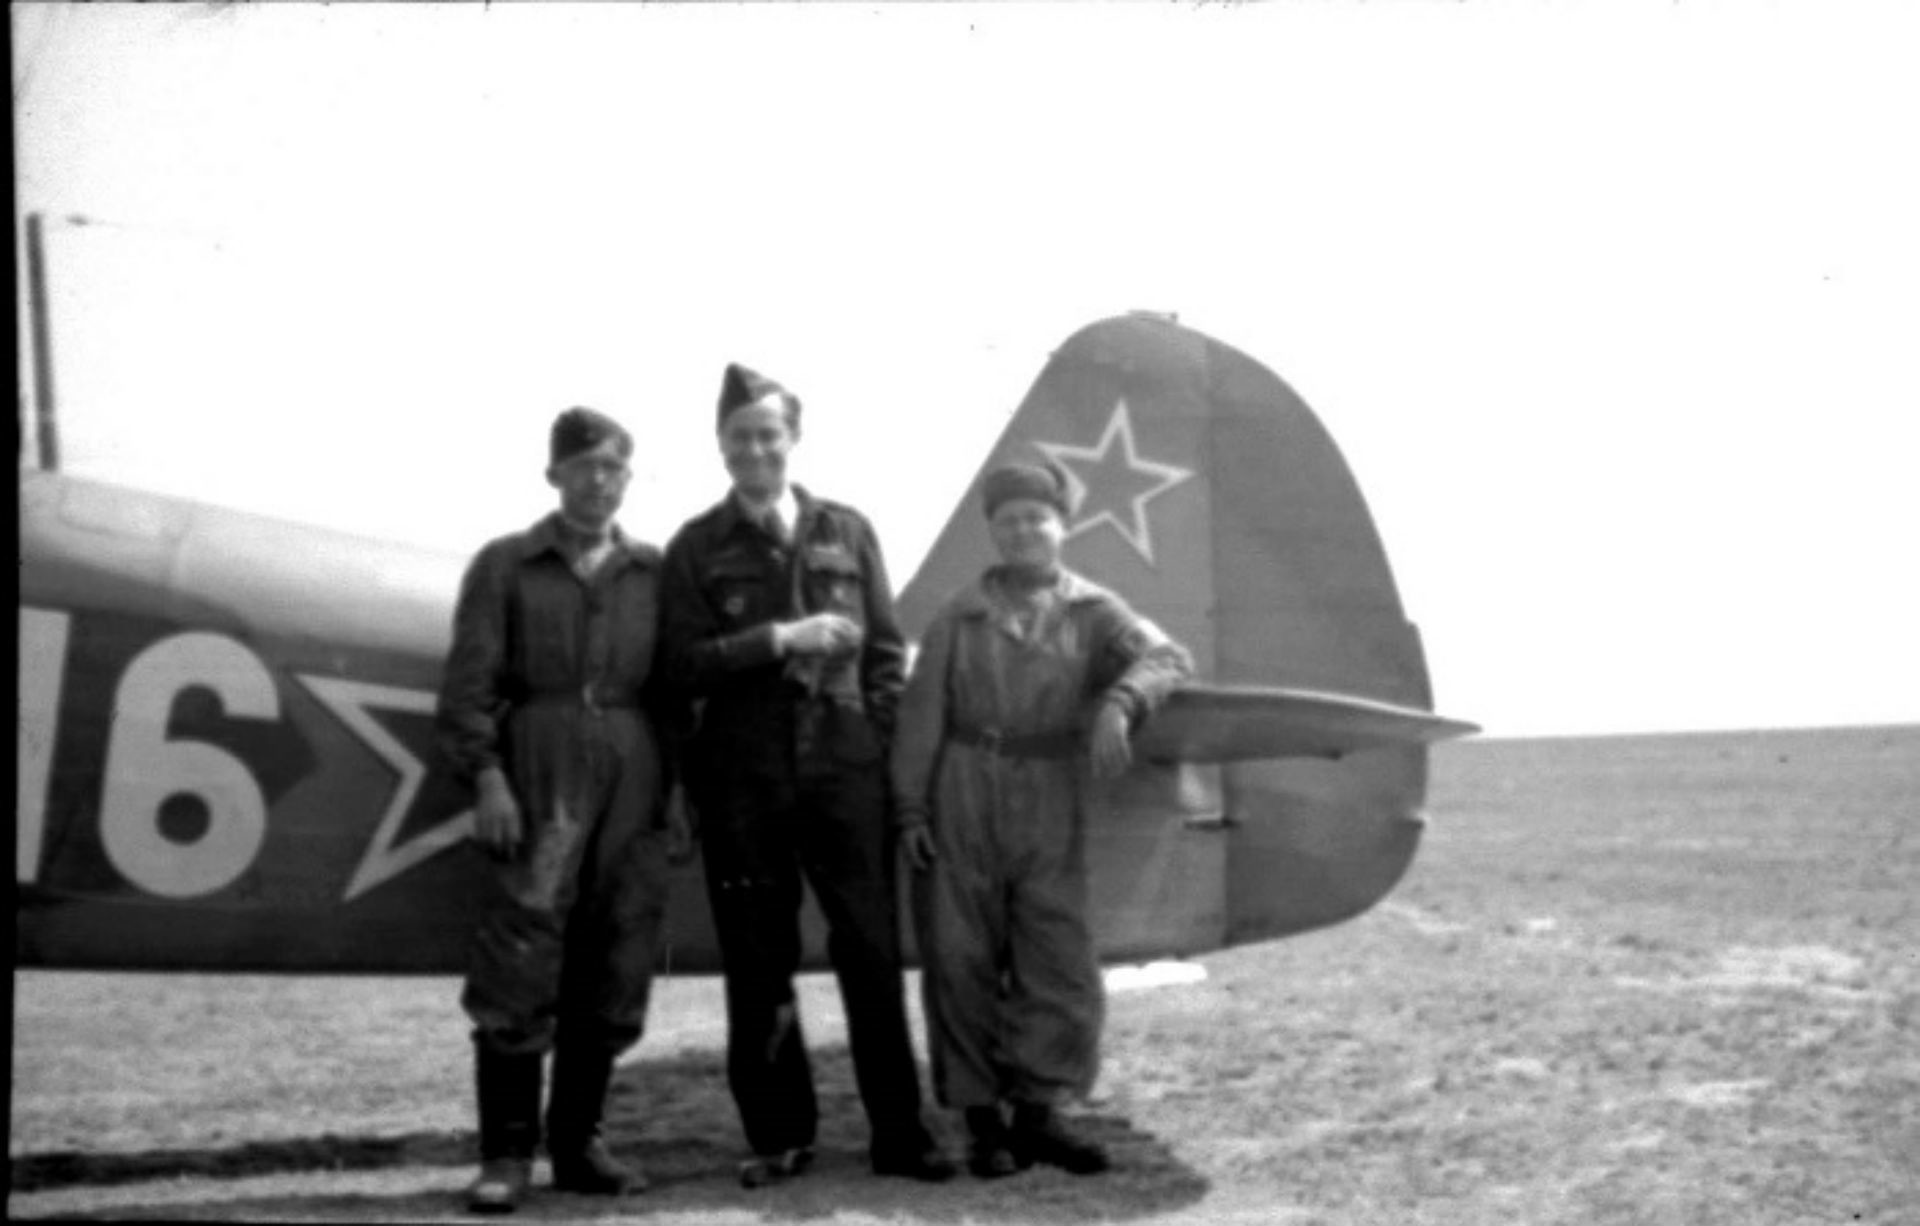 Devant leur Yak-7T: le pilote français Yves Mourier (au milieu), âgé de 32 ans  et  son mécanicien russe Valentin Ivanovitch Ogourtsov, âgé de 18 ans  (à droite).  Il s’agit des membres de la célèbre escadrille Normandie-Niemen. 